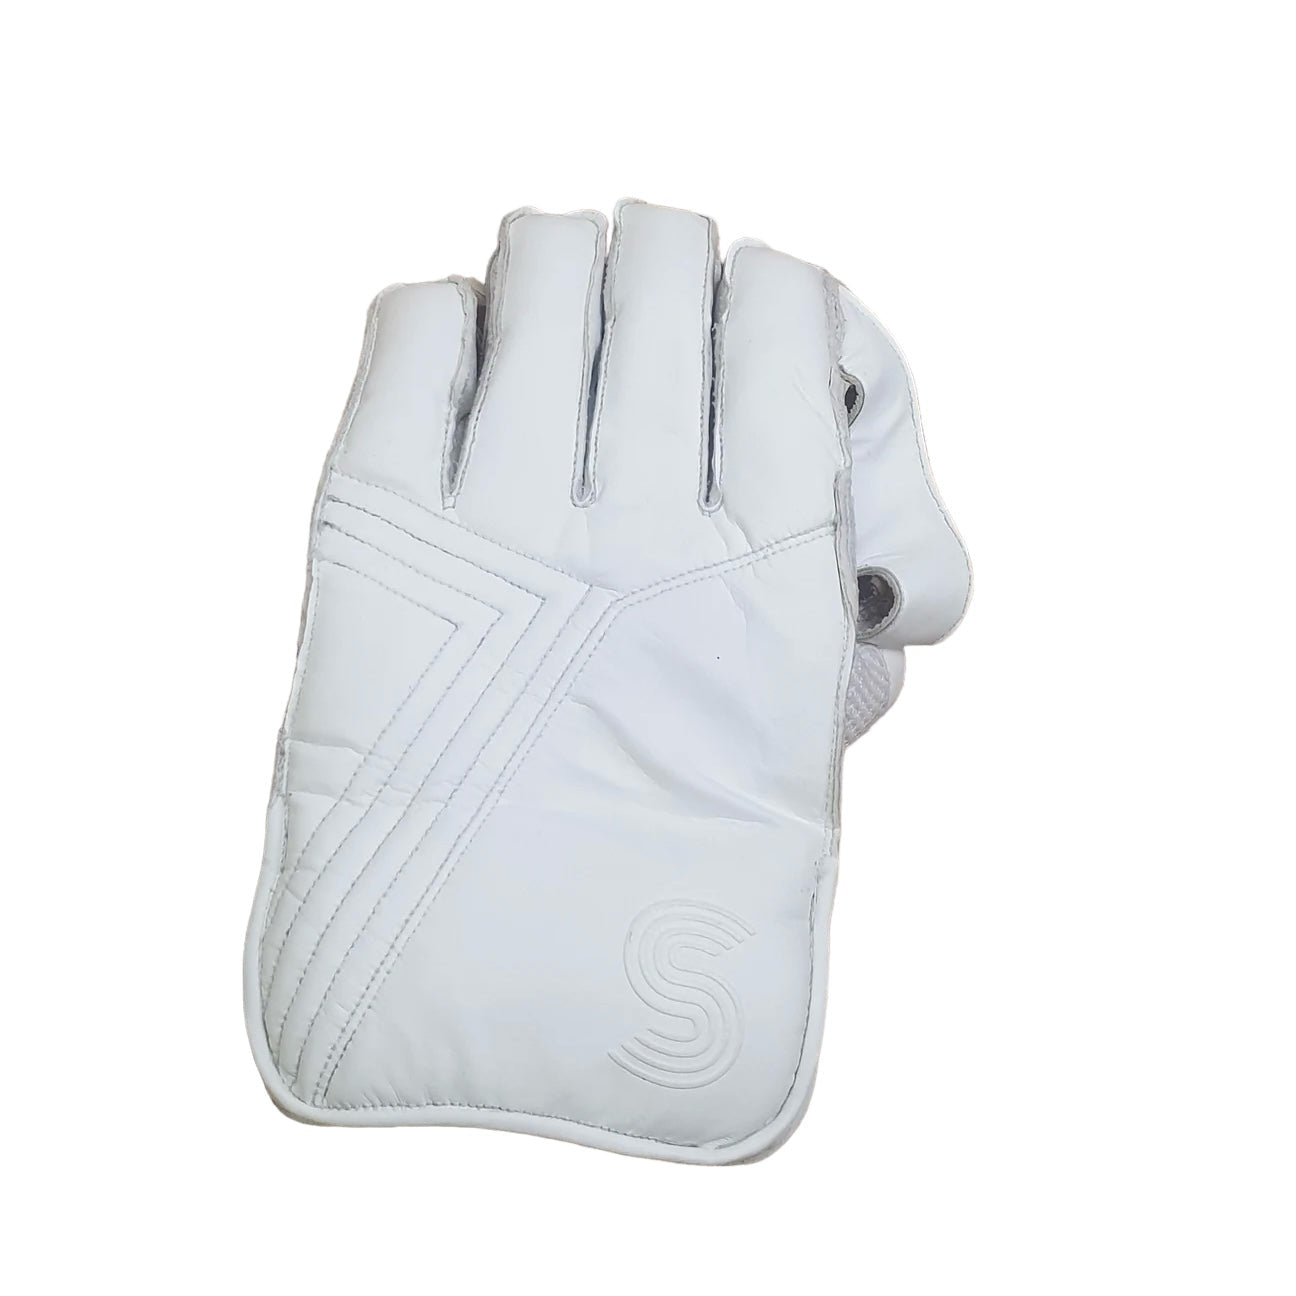 Scott Cricket Wicket Keeping Gloves